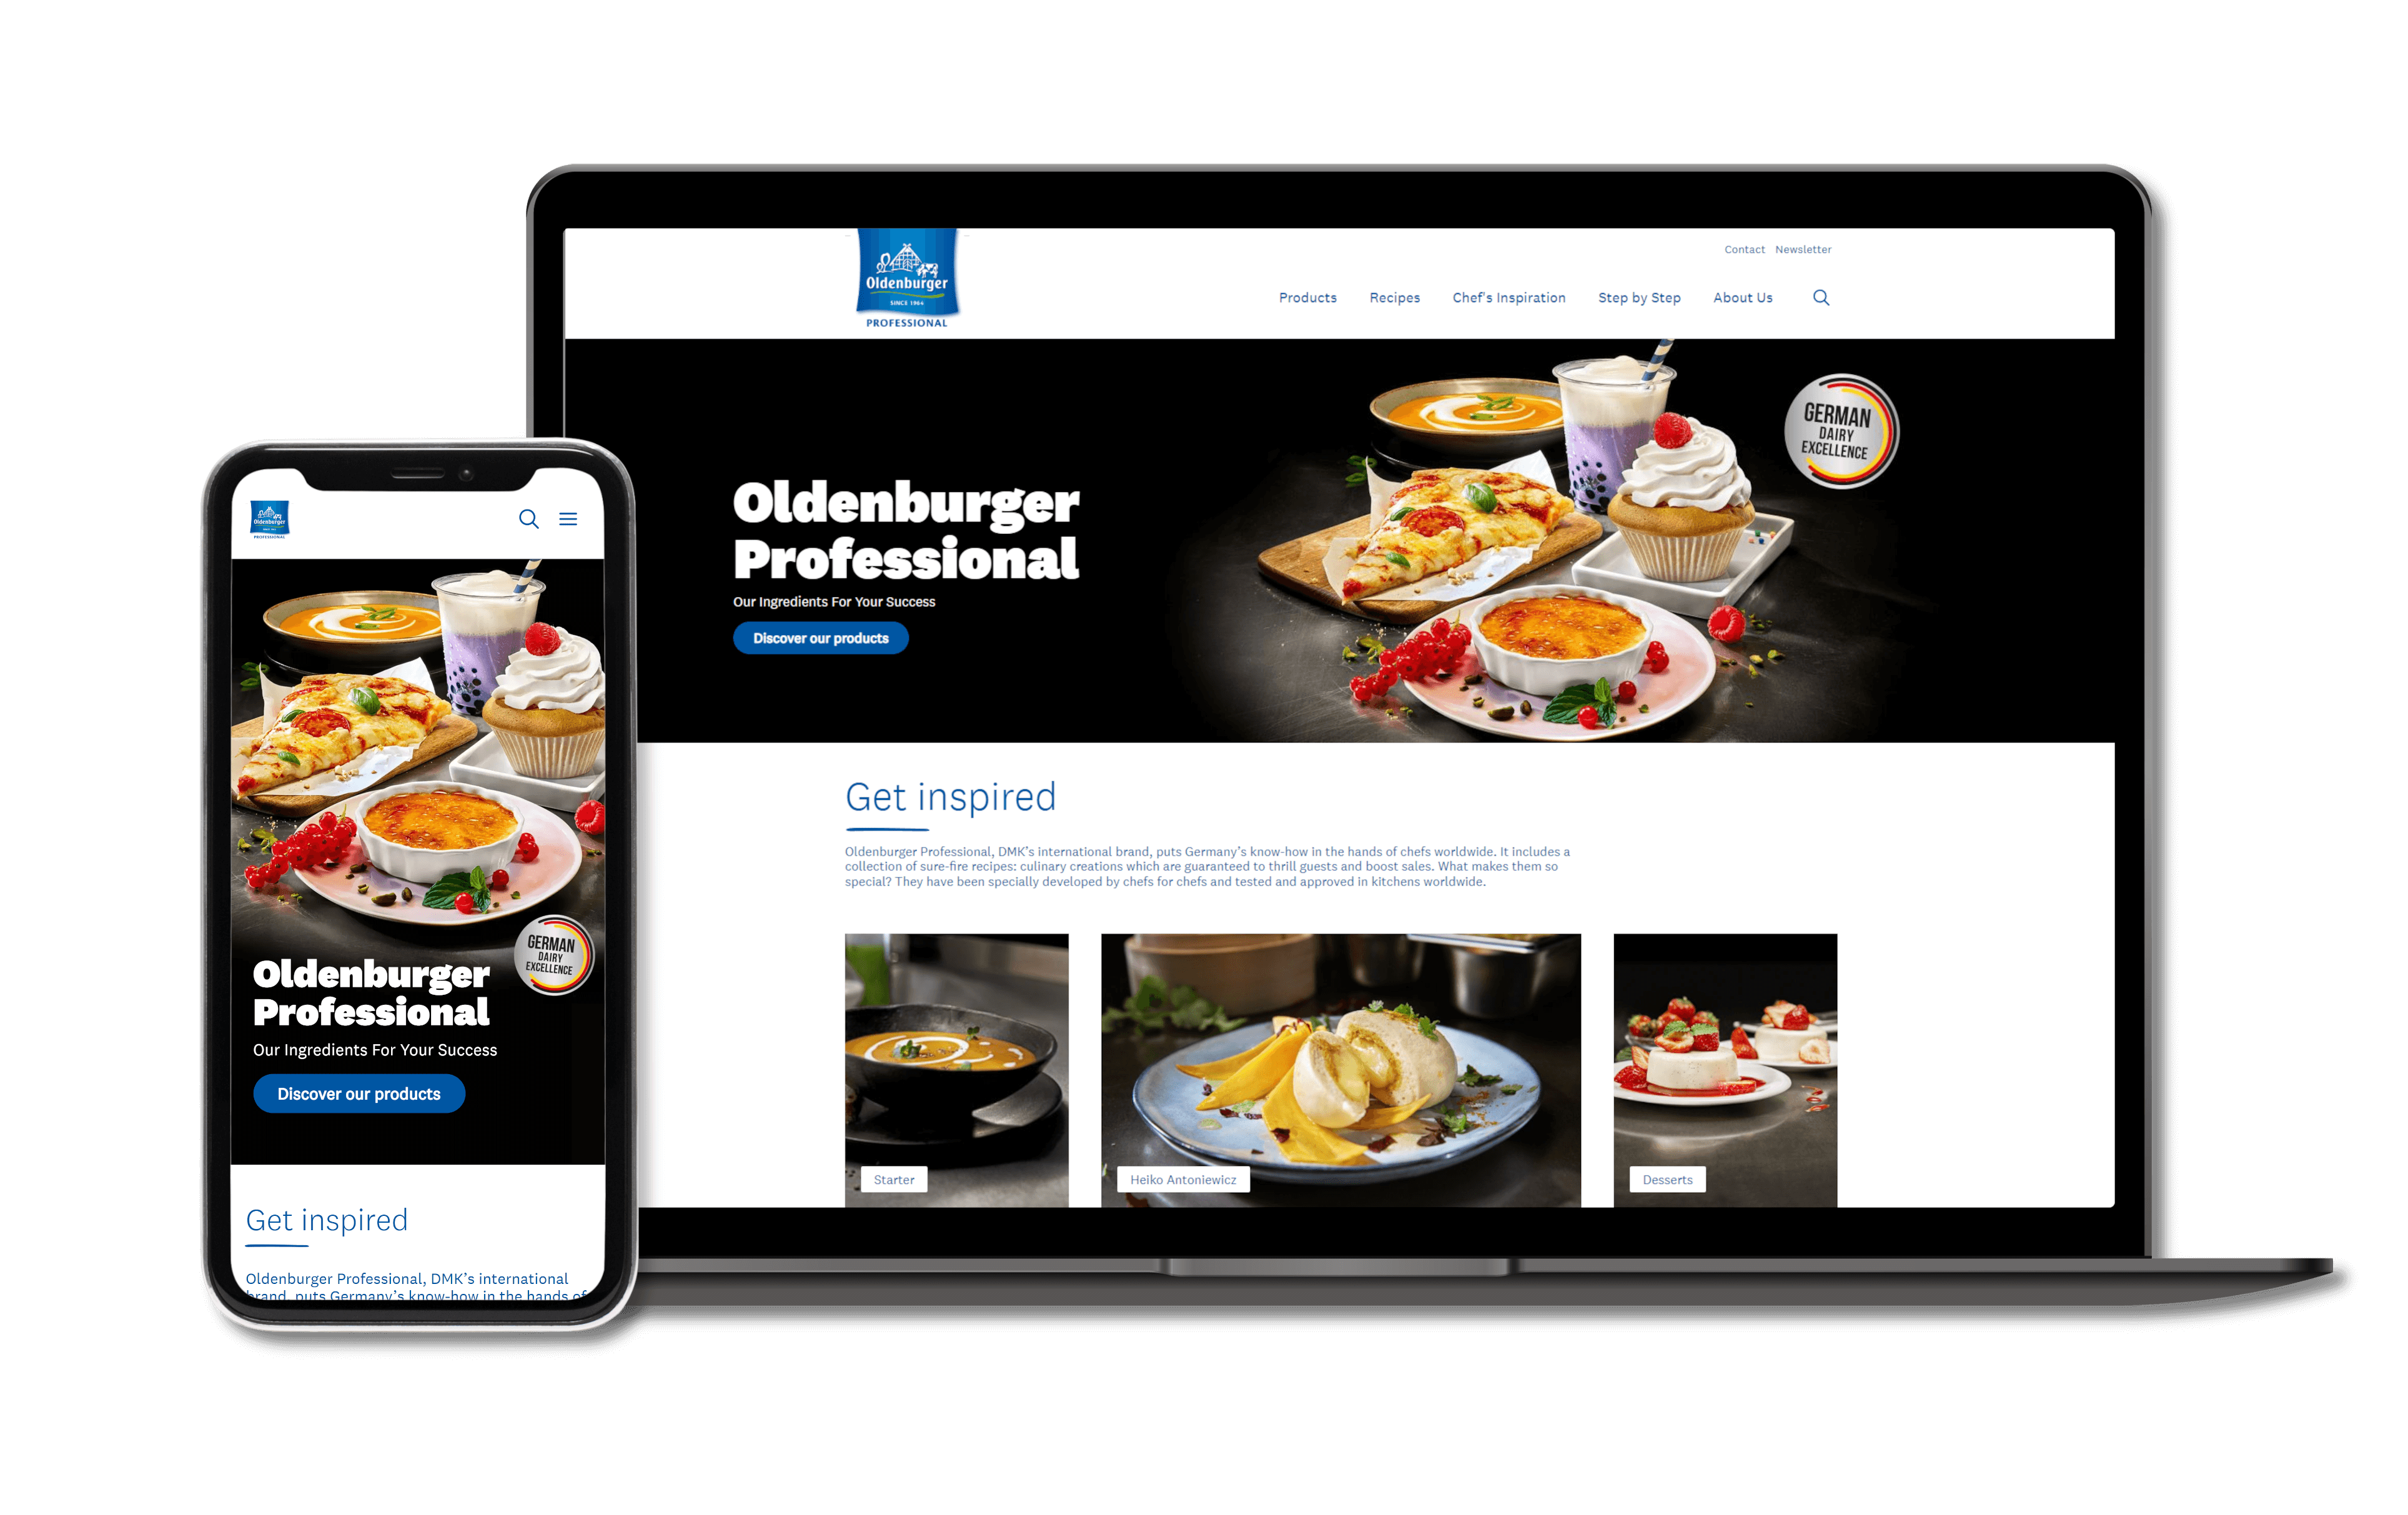 Kundenbeispiel in Shopware 6 by iMi digital - Oldenburger Professional